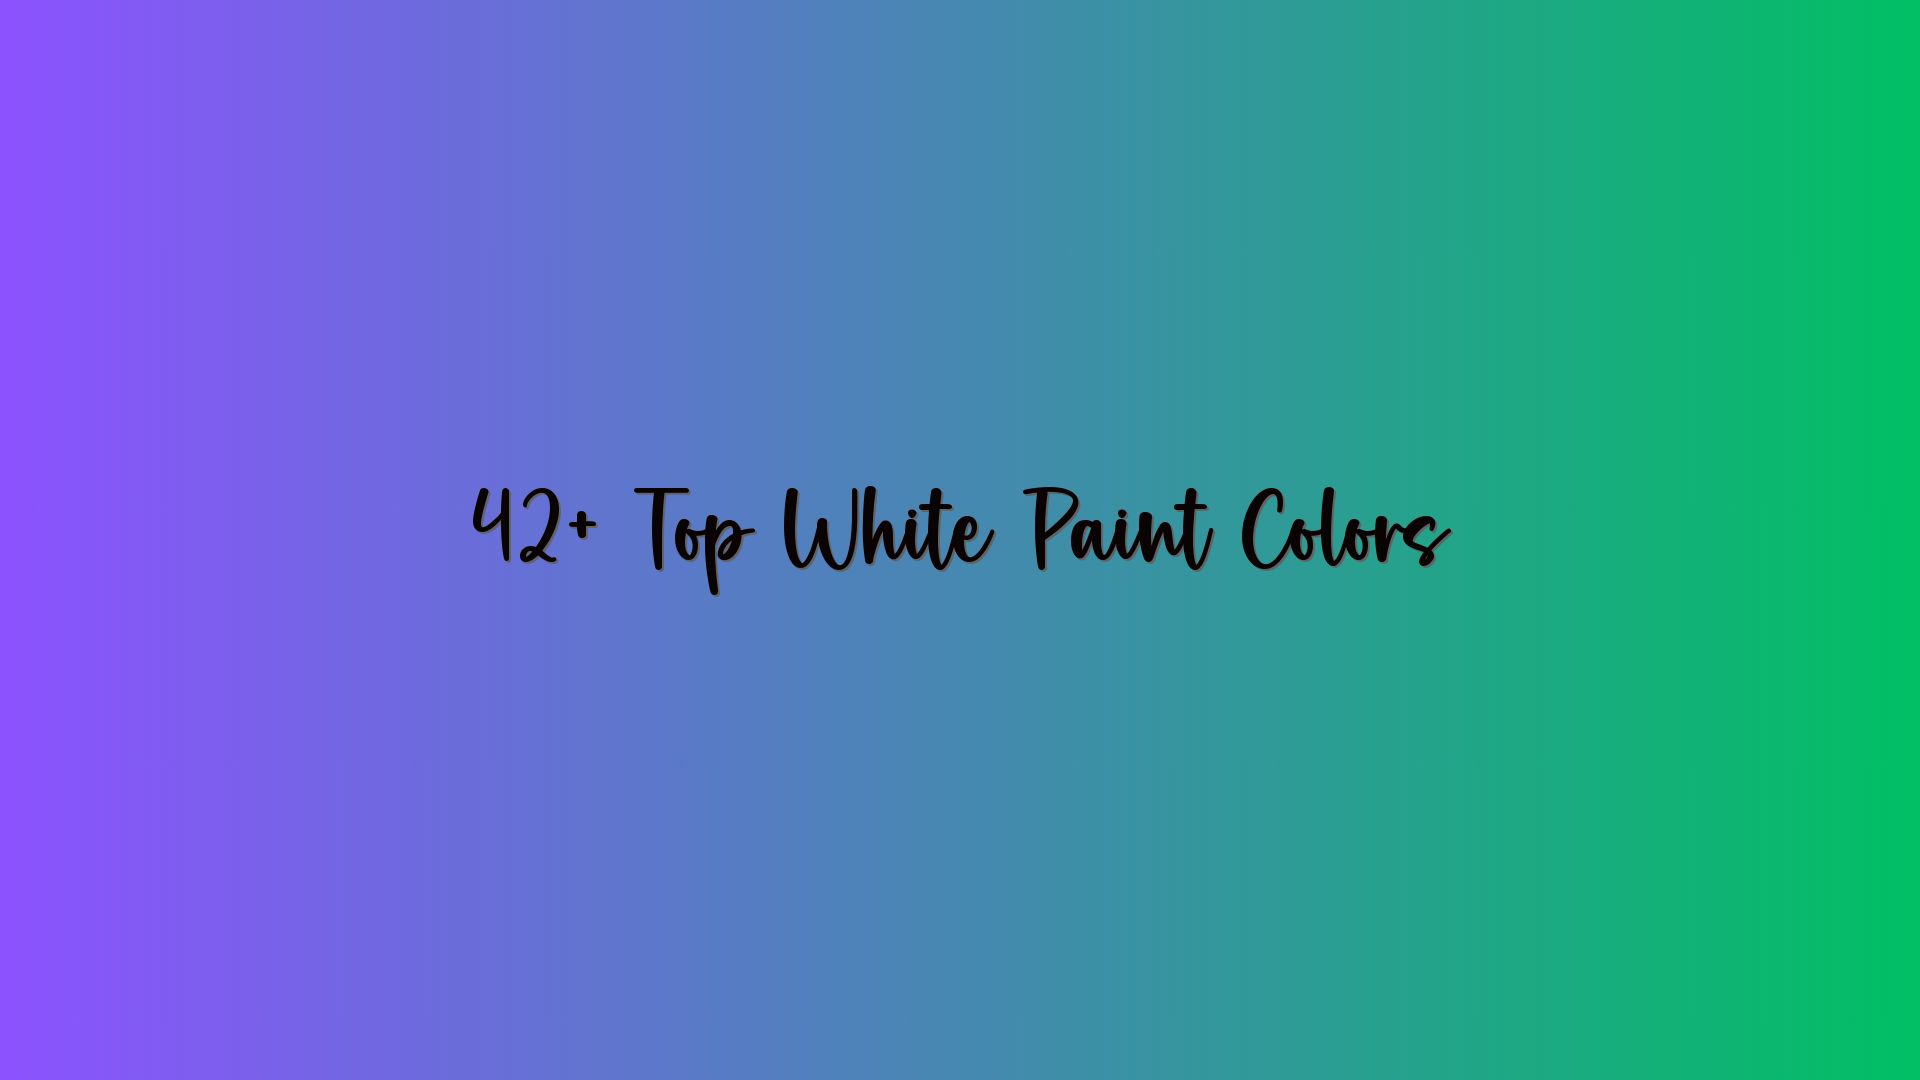 42+ Top White Paint Colors